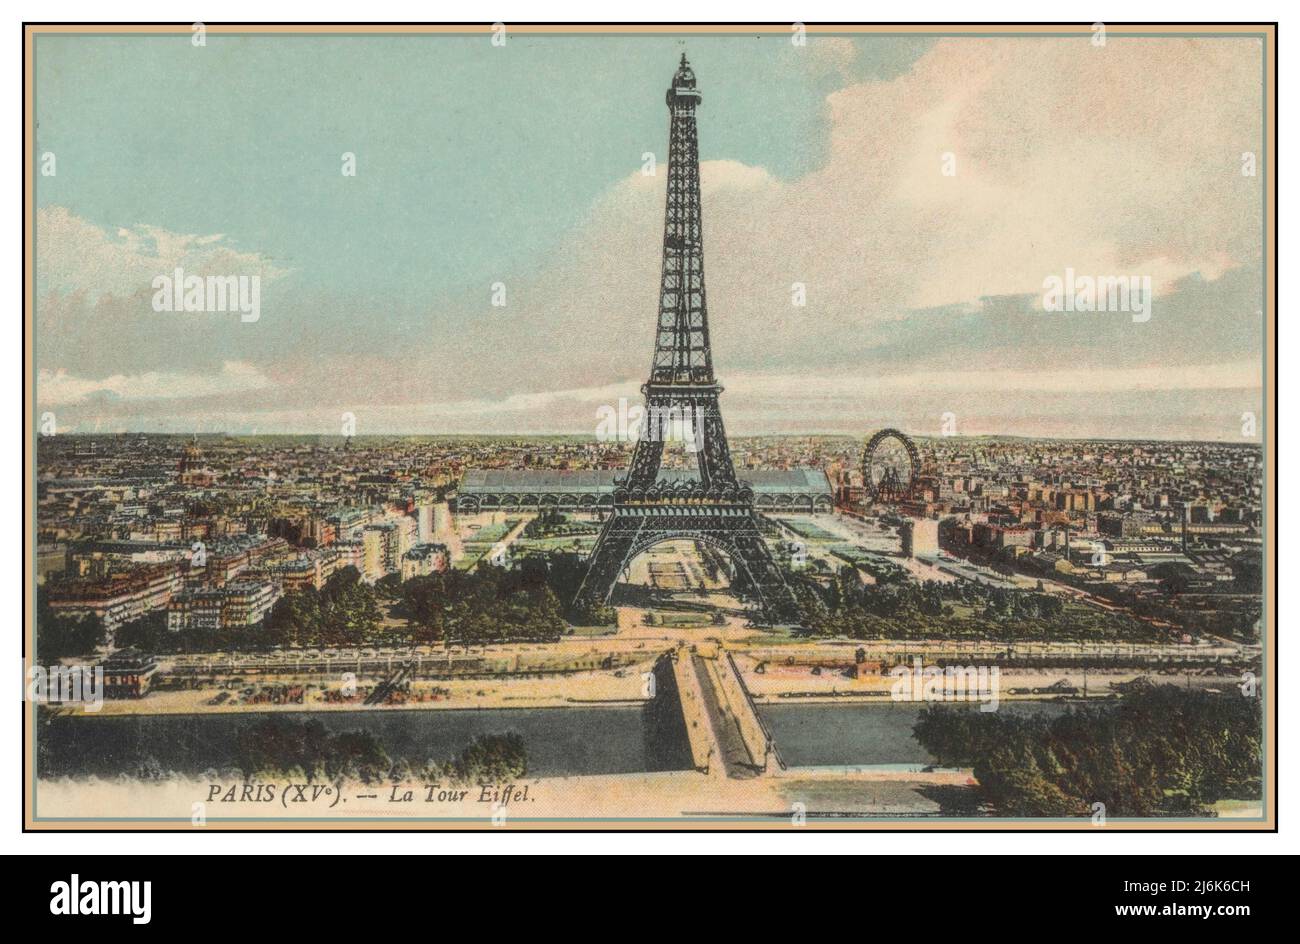 PARIS (XVe) 1900s Tour Eiffel rétro et Seine ancienne carte postale touristique vue « la Tour Eiffel » Paris France Paysage vue aérienne Historique Vieux Paris Illustration Banque D'Images